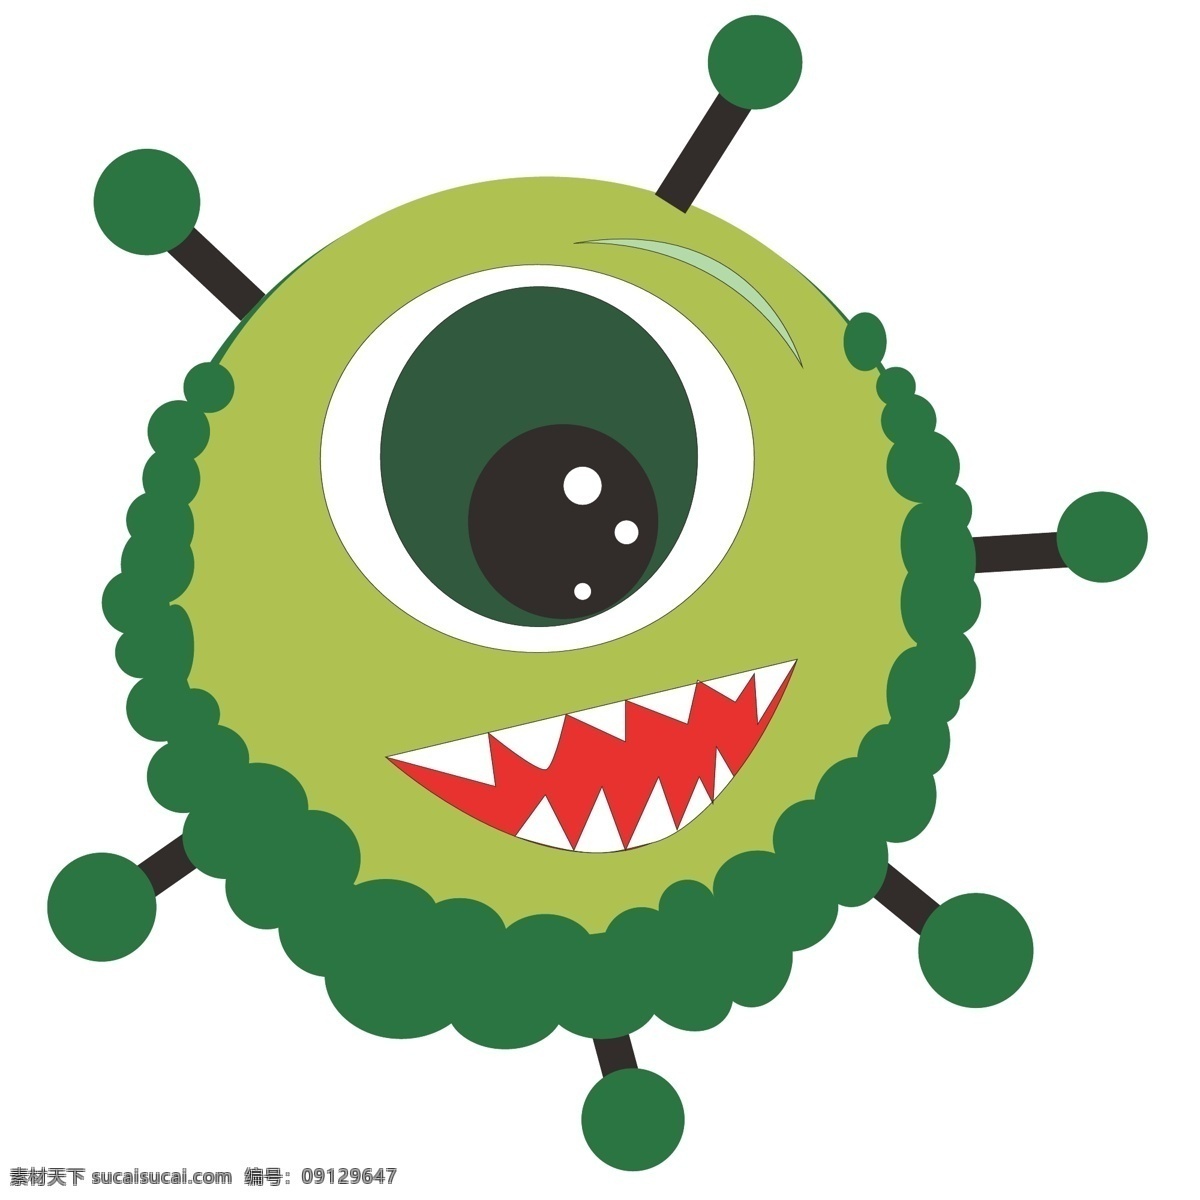 大 眼睛 有害 细菌 插画 大大的眼睛 卡通插画 细菌插画 有害细菌 传染细菌 病毒细菌 独眼的细菌